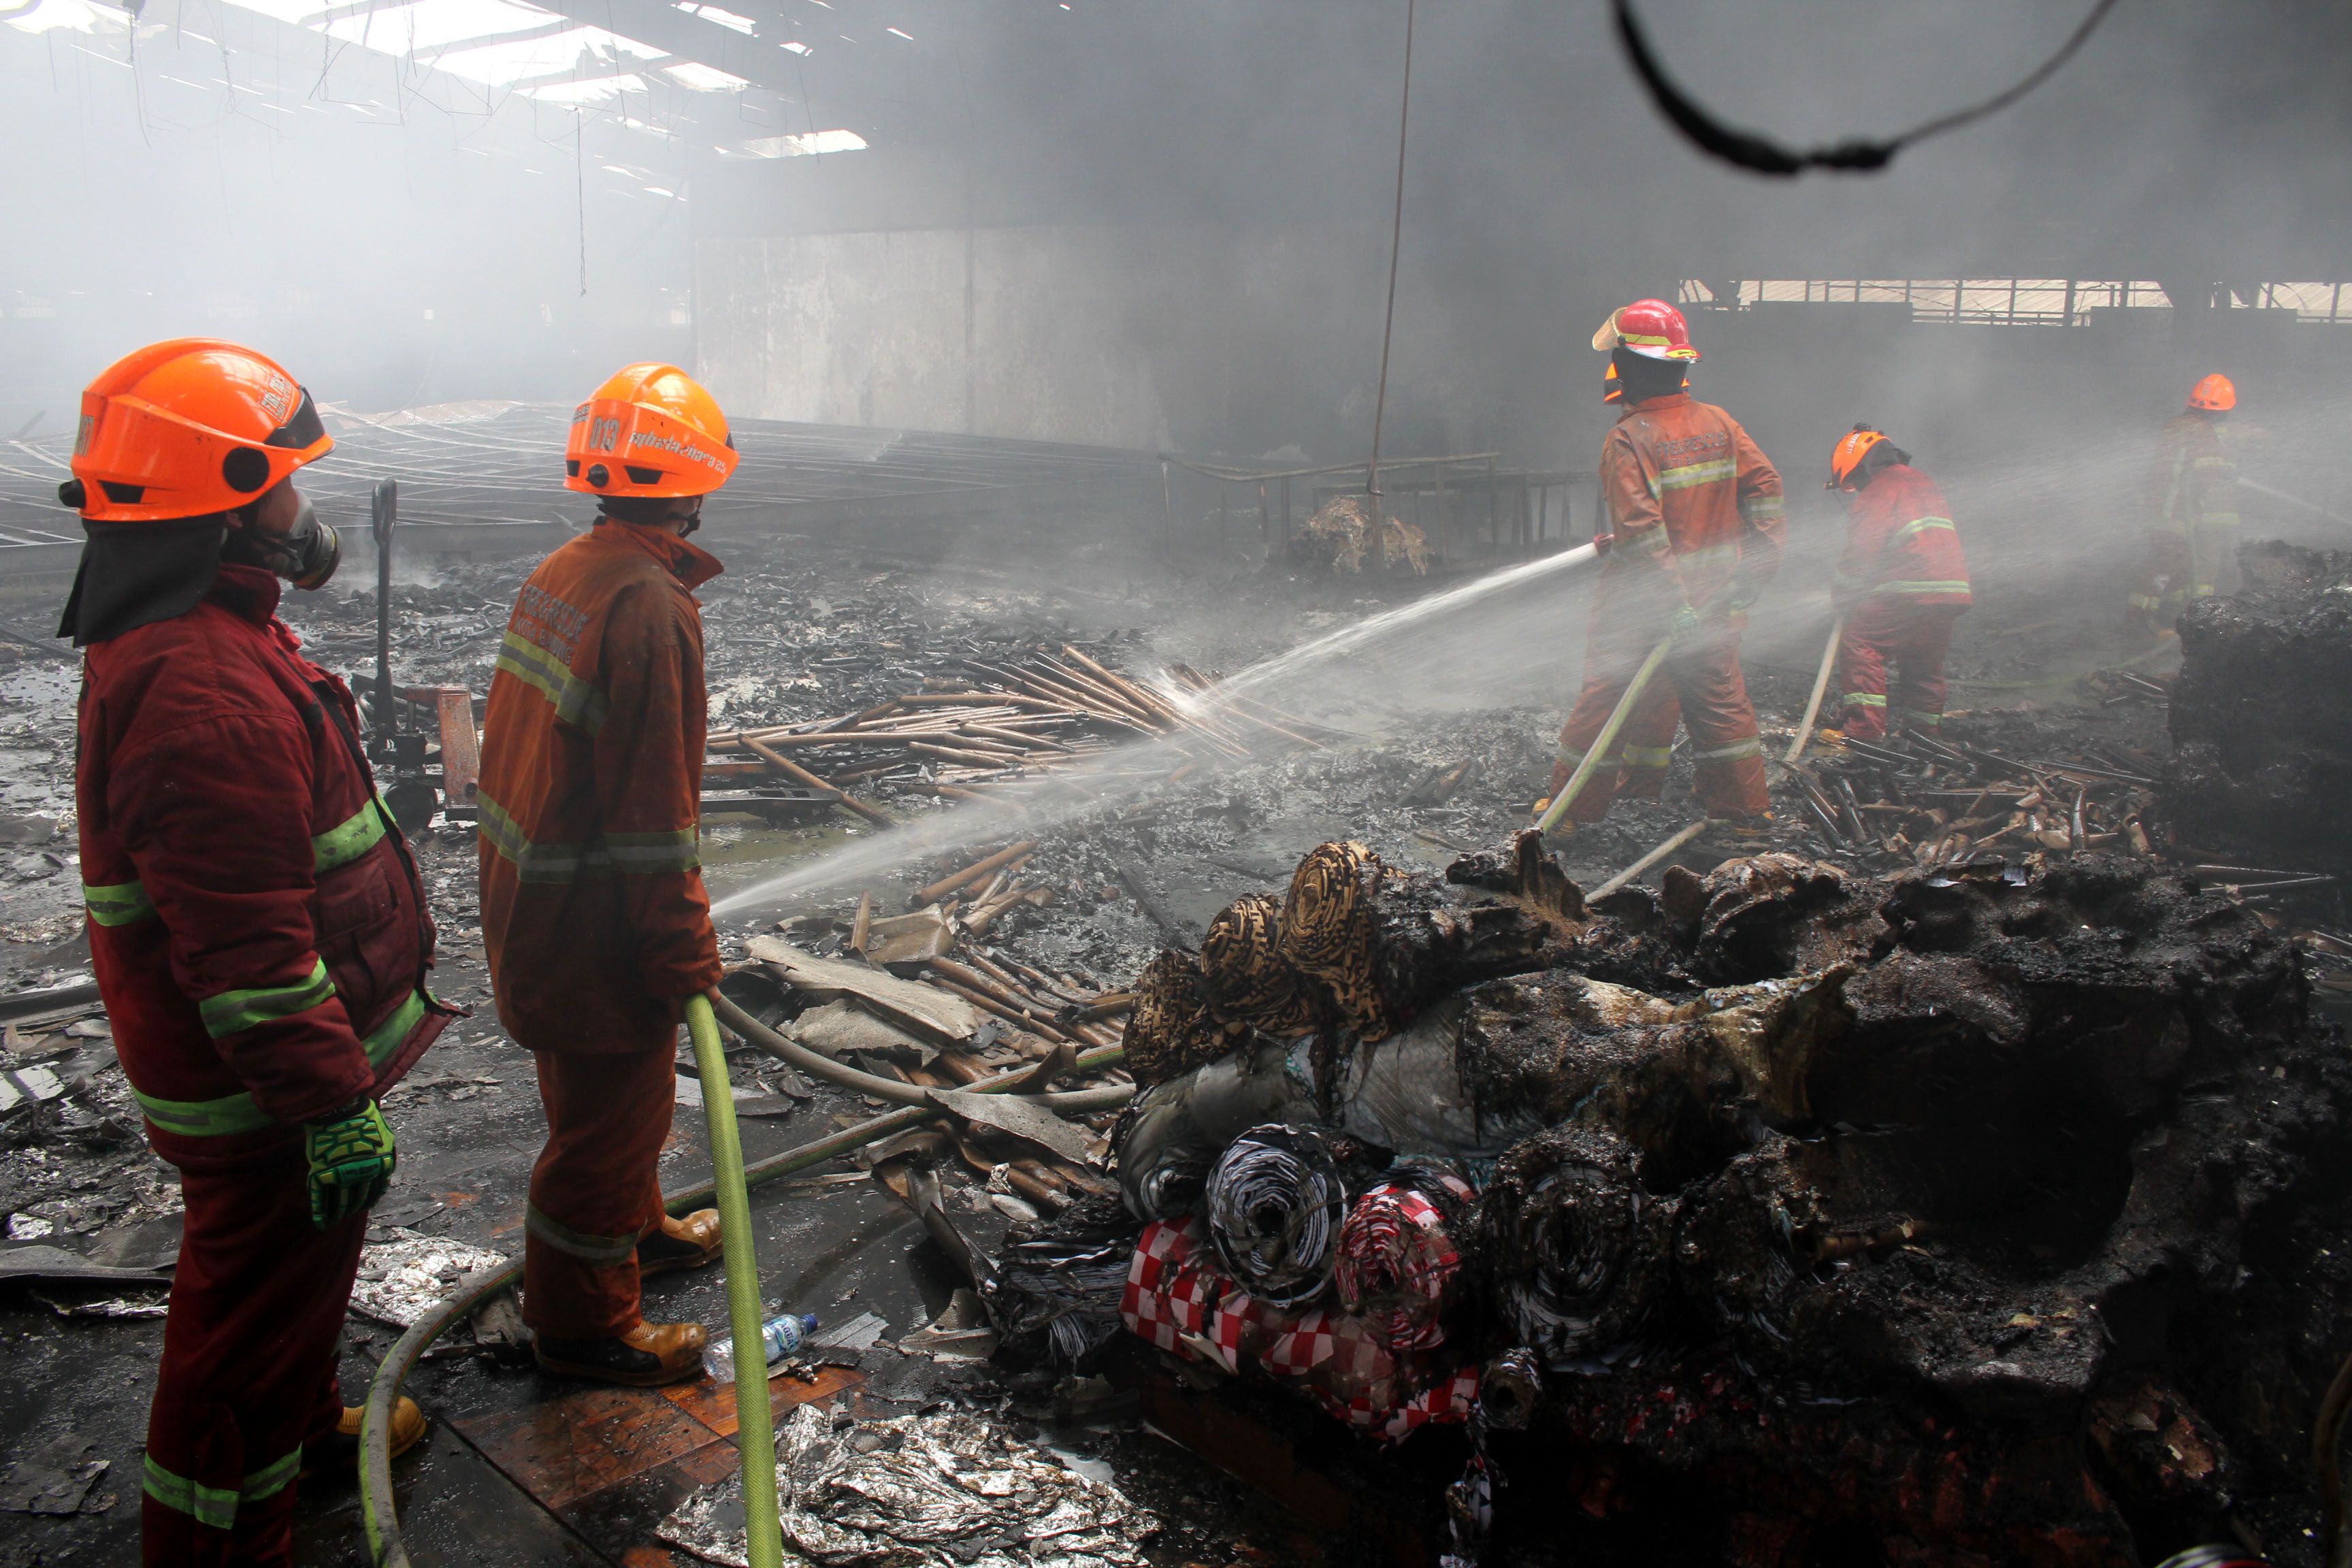 Sebuah bangunan disalahsatu pabrik tekstil terbakar di Jln. Jend. Sudirman, Kel. Cijerah, Kec. Bandung Kulon, Kota Bandung, Senin, 4 Oktober 2021./Darma Legi/Galamedia